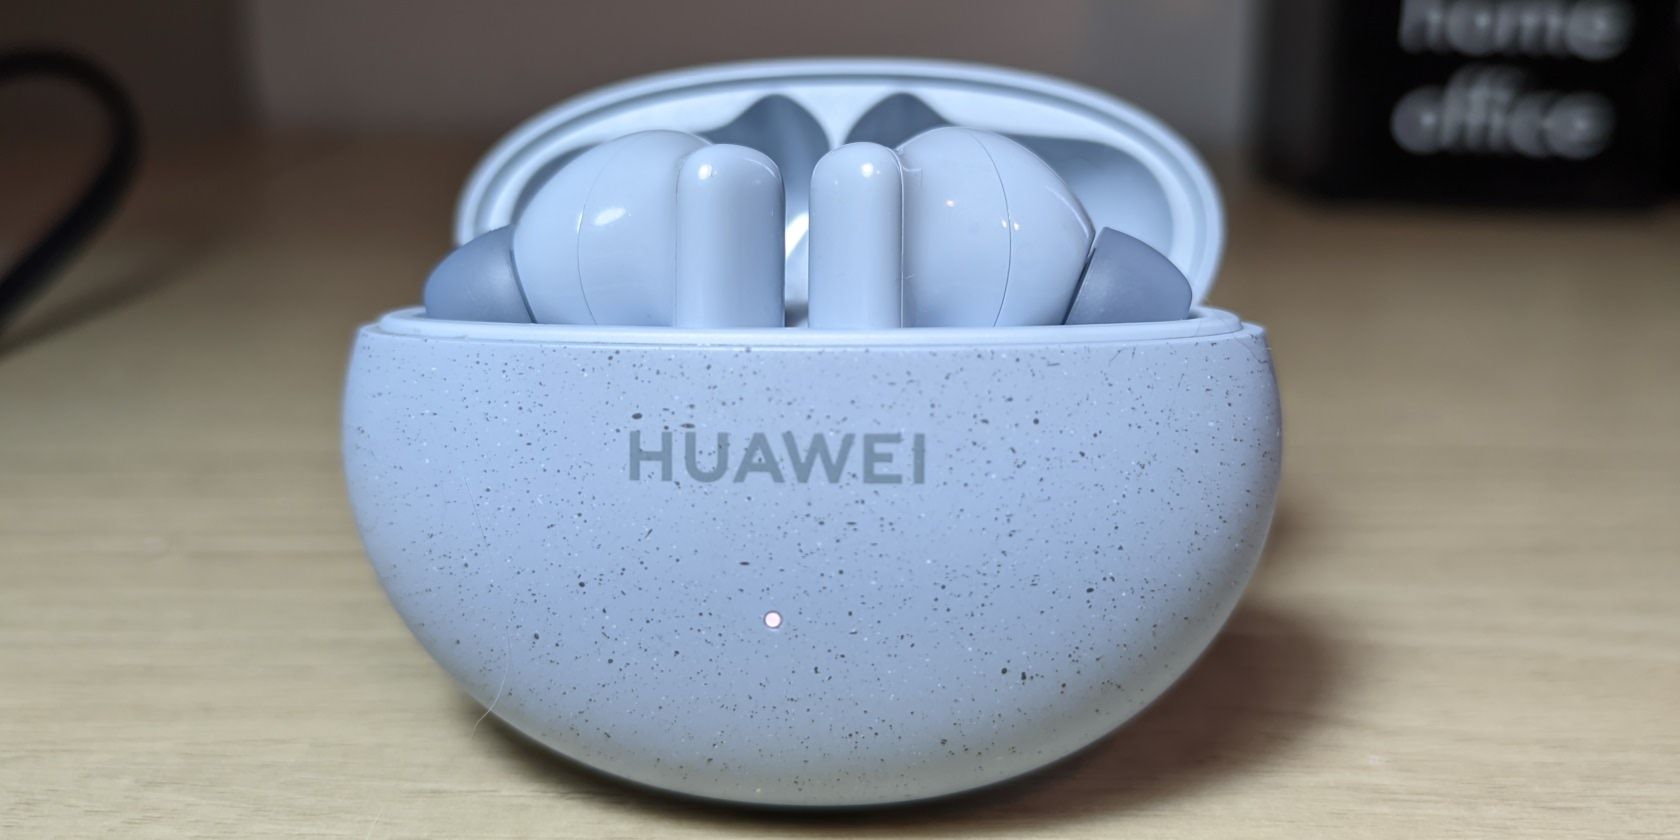 Huawei FreeBuds 5i wireless earbuds review •